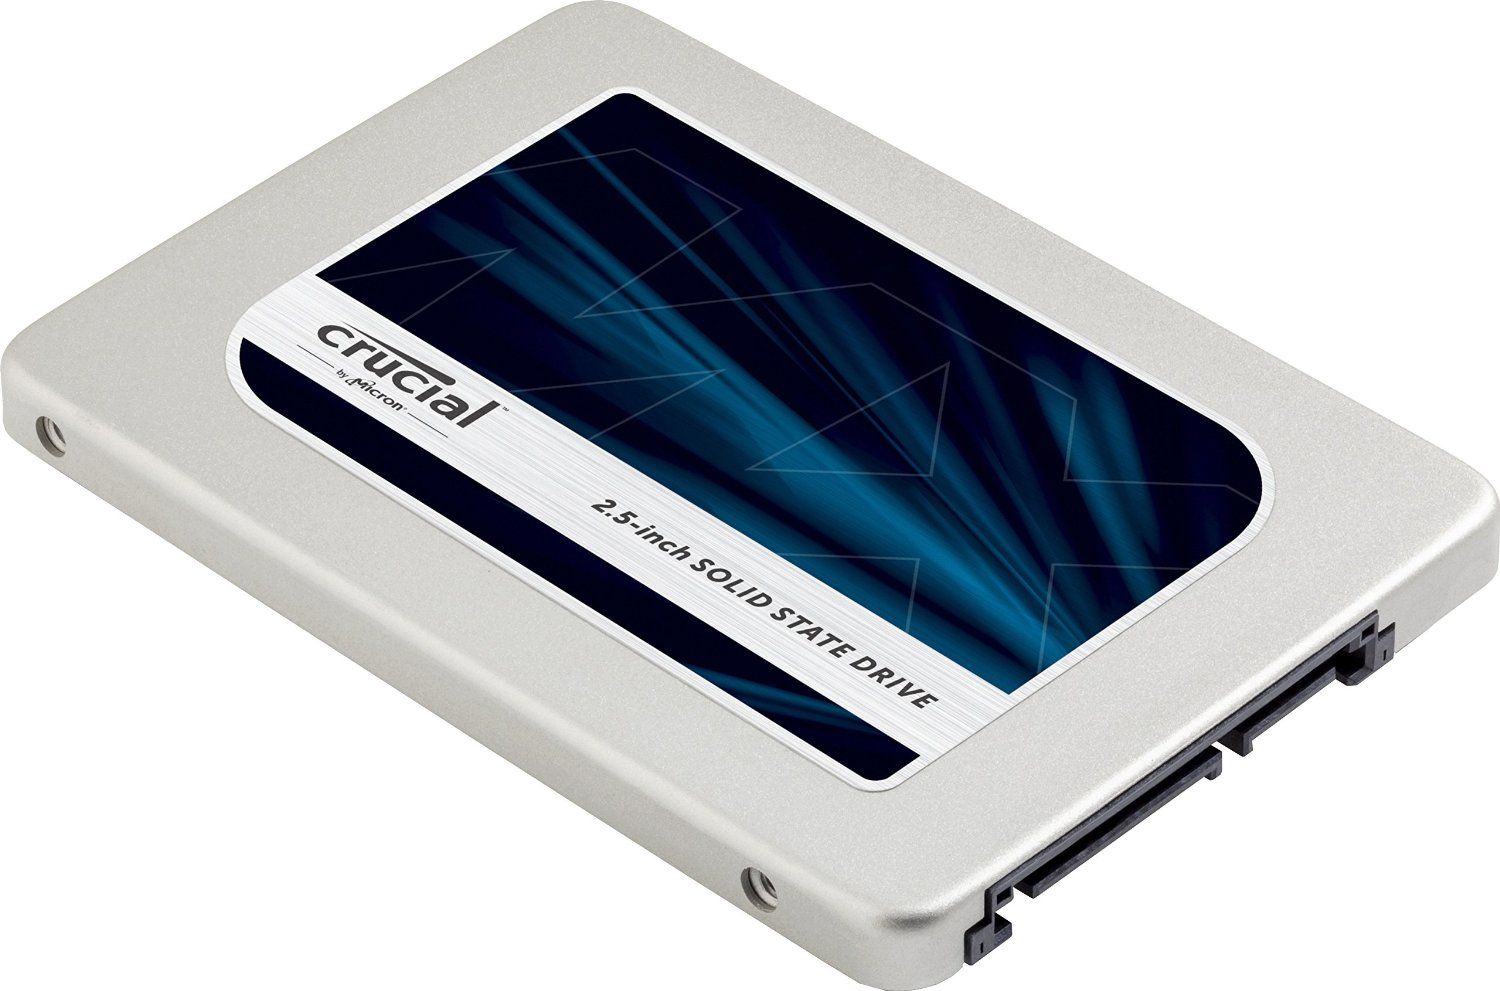 SSD Crucial MX500 1To, 560Mb/s, SATA3 - CARON Informatique - Calais